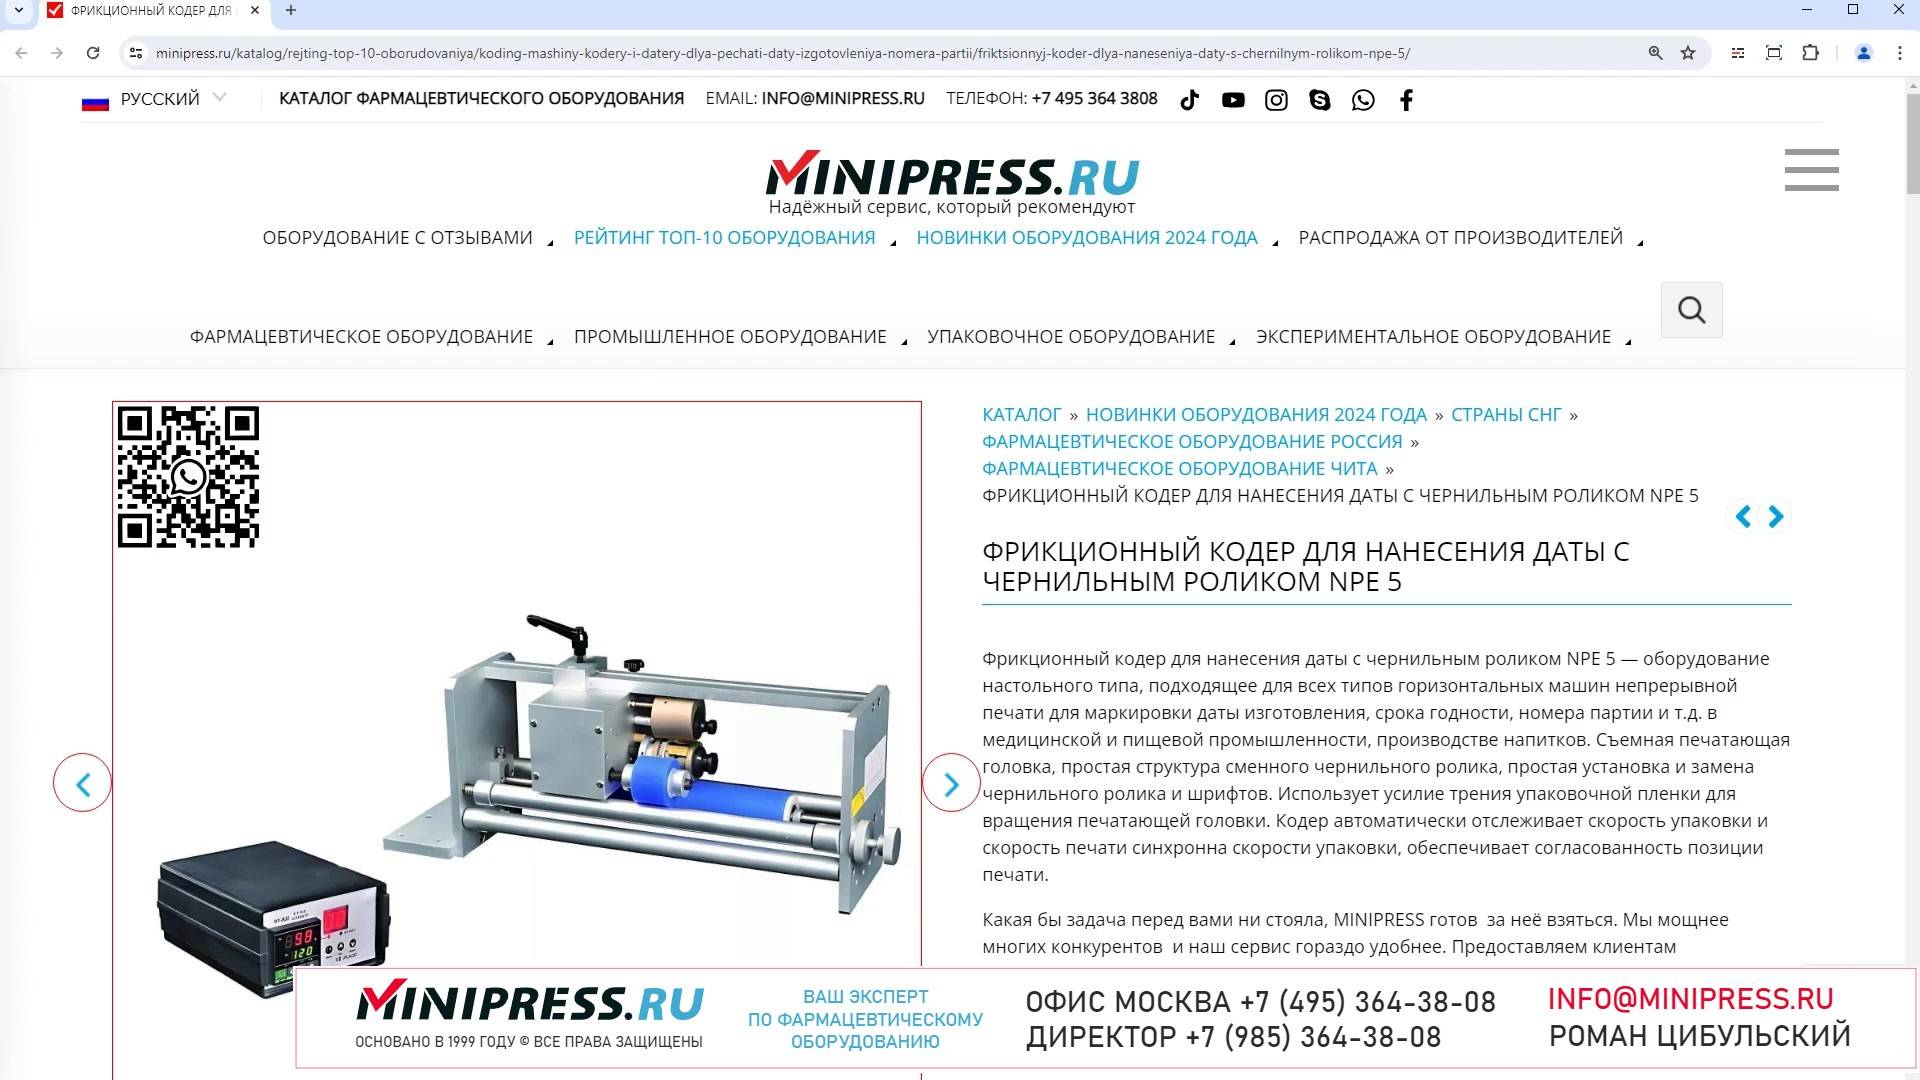 Minipress.ru Фрикционный кодер для нанесения даты с чернильным роликом NPE 5